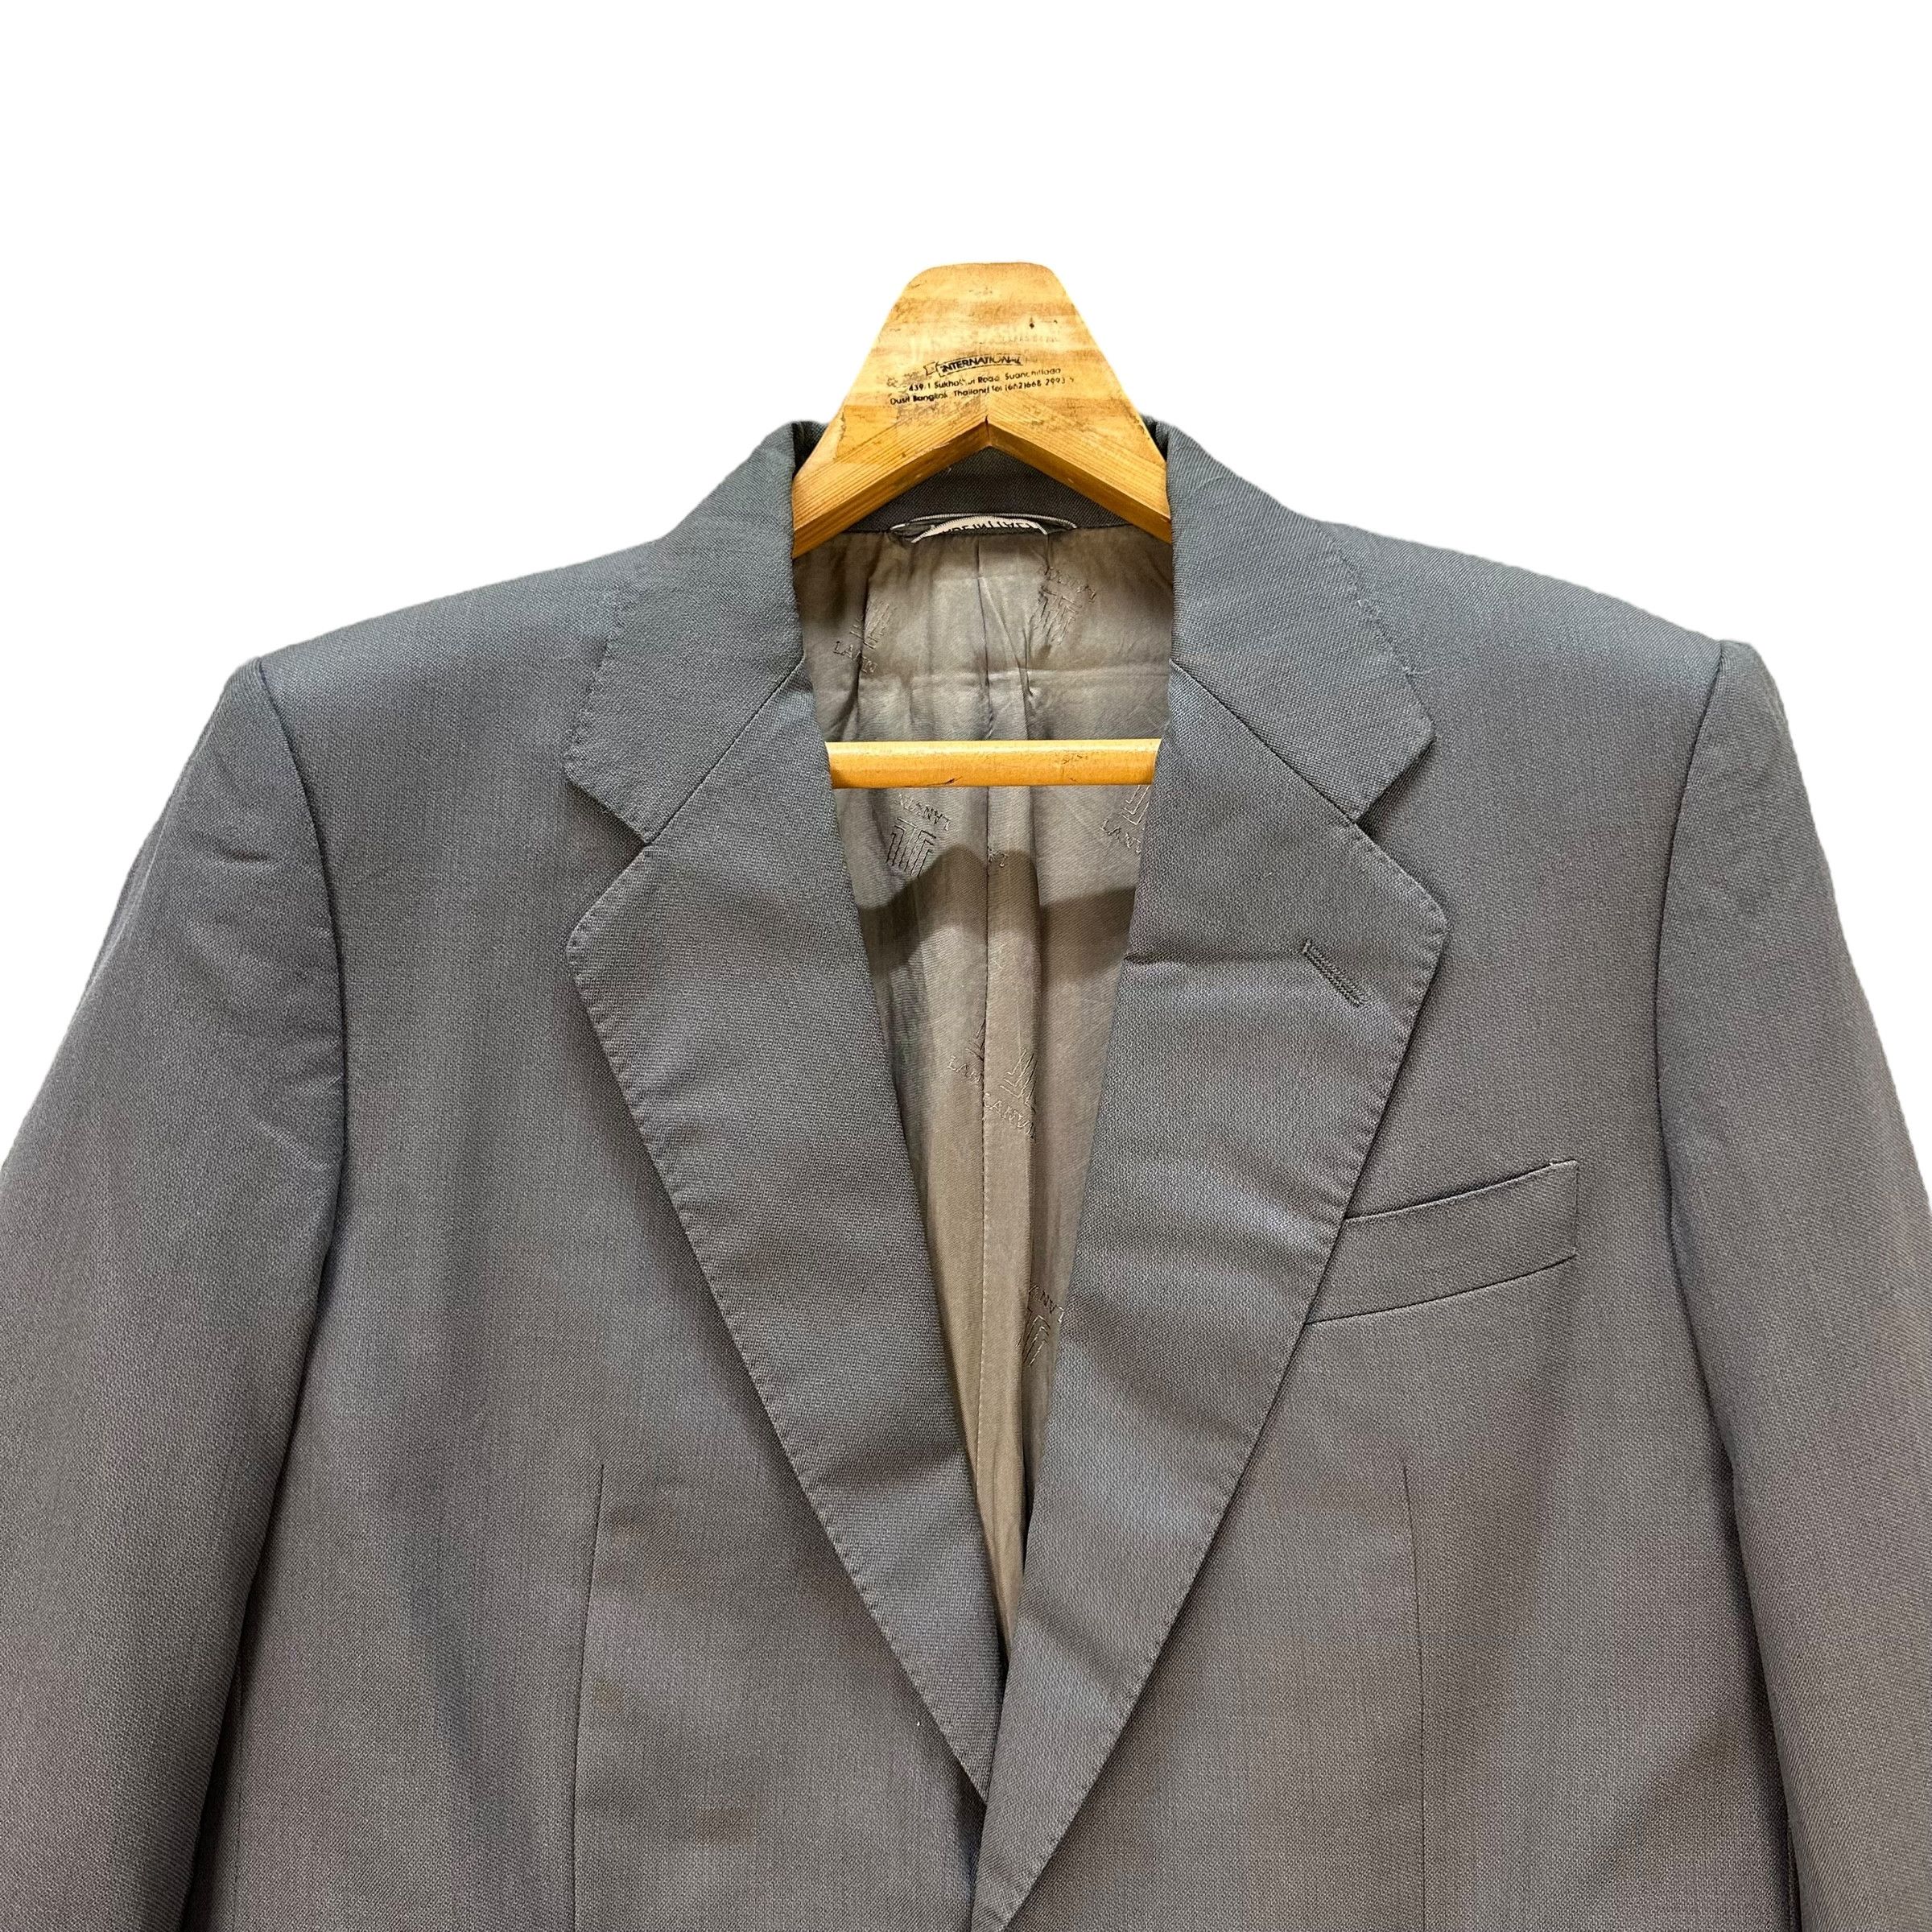 Lanvin Paris Suit Jacket / Blazer #9139-61 - 2